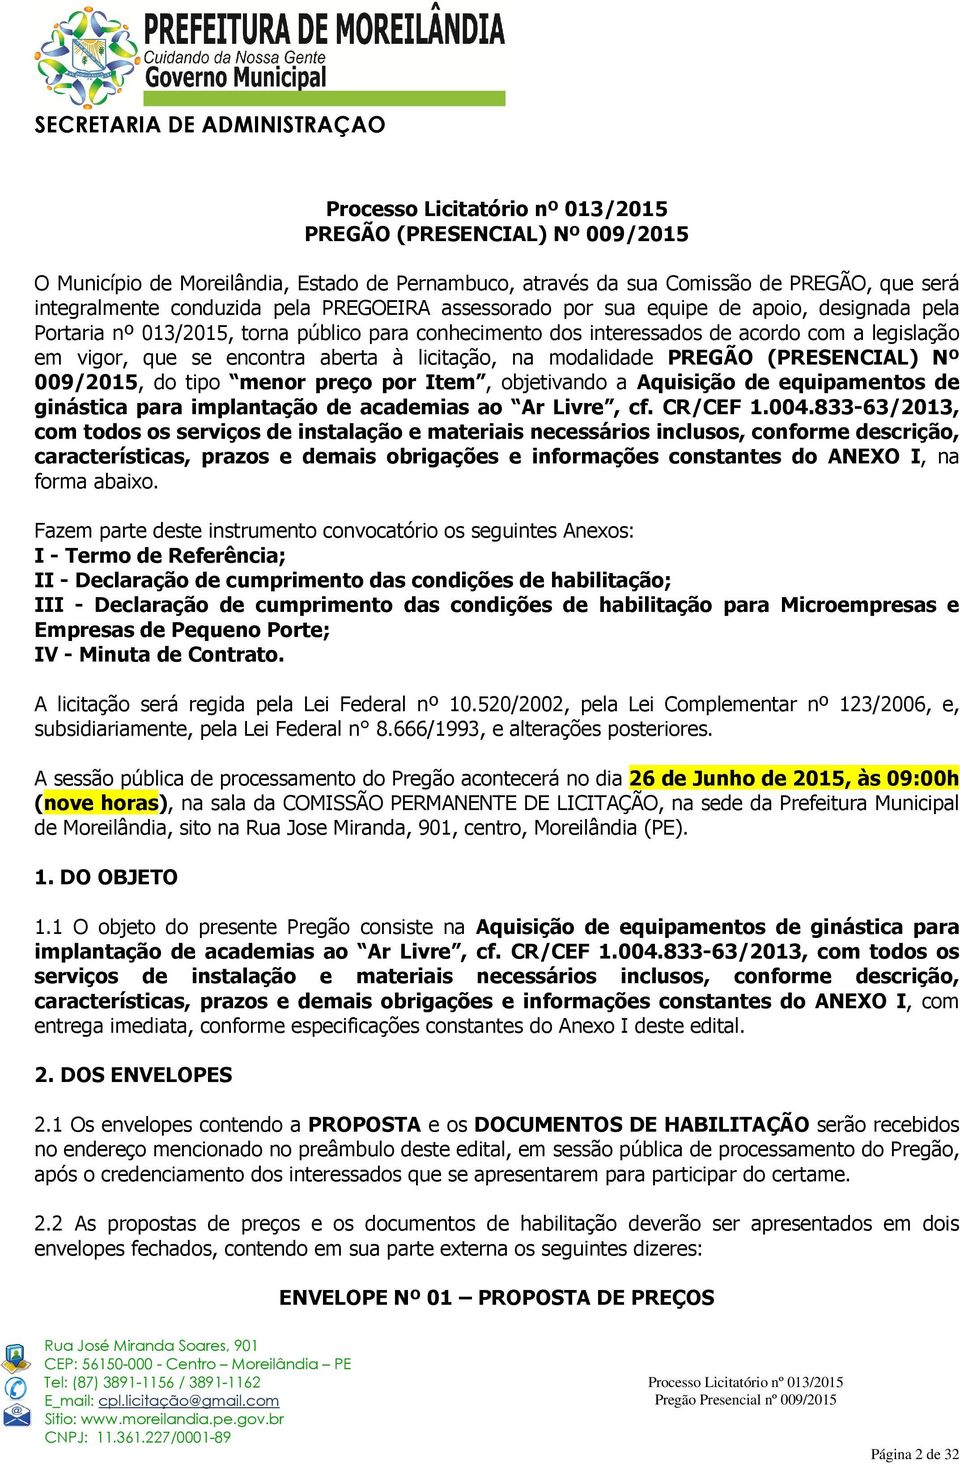 Nº 009/2015, do tipo menor preço por Item, objetivando a Aquisição de equipamentos de ginástica para implantação de academias ao Ar Livre, cf. CR/CEF 1.004.